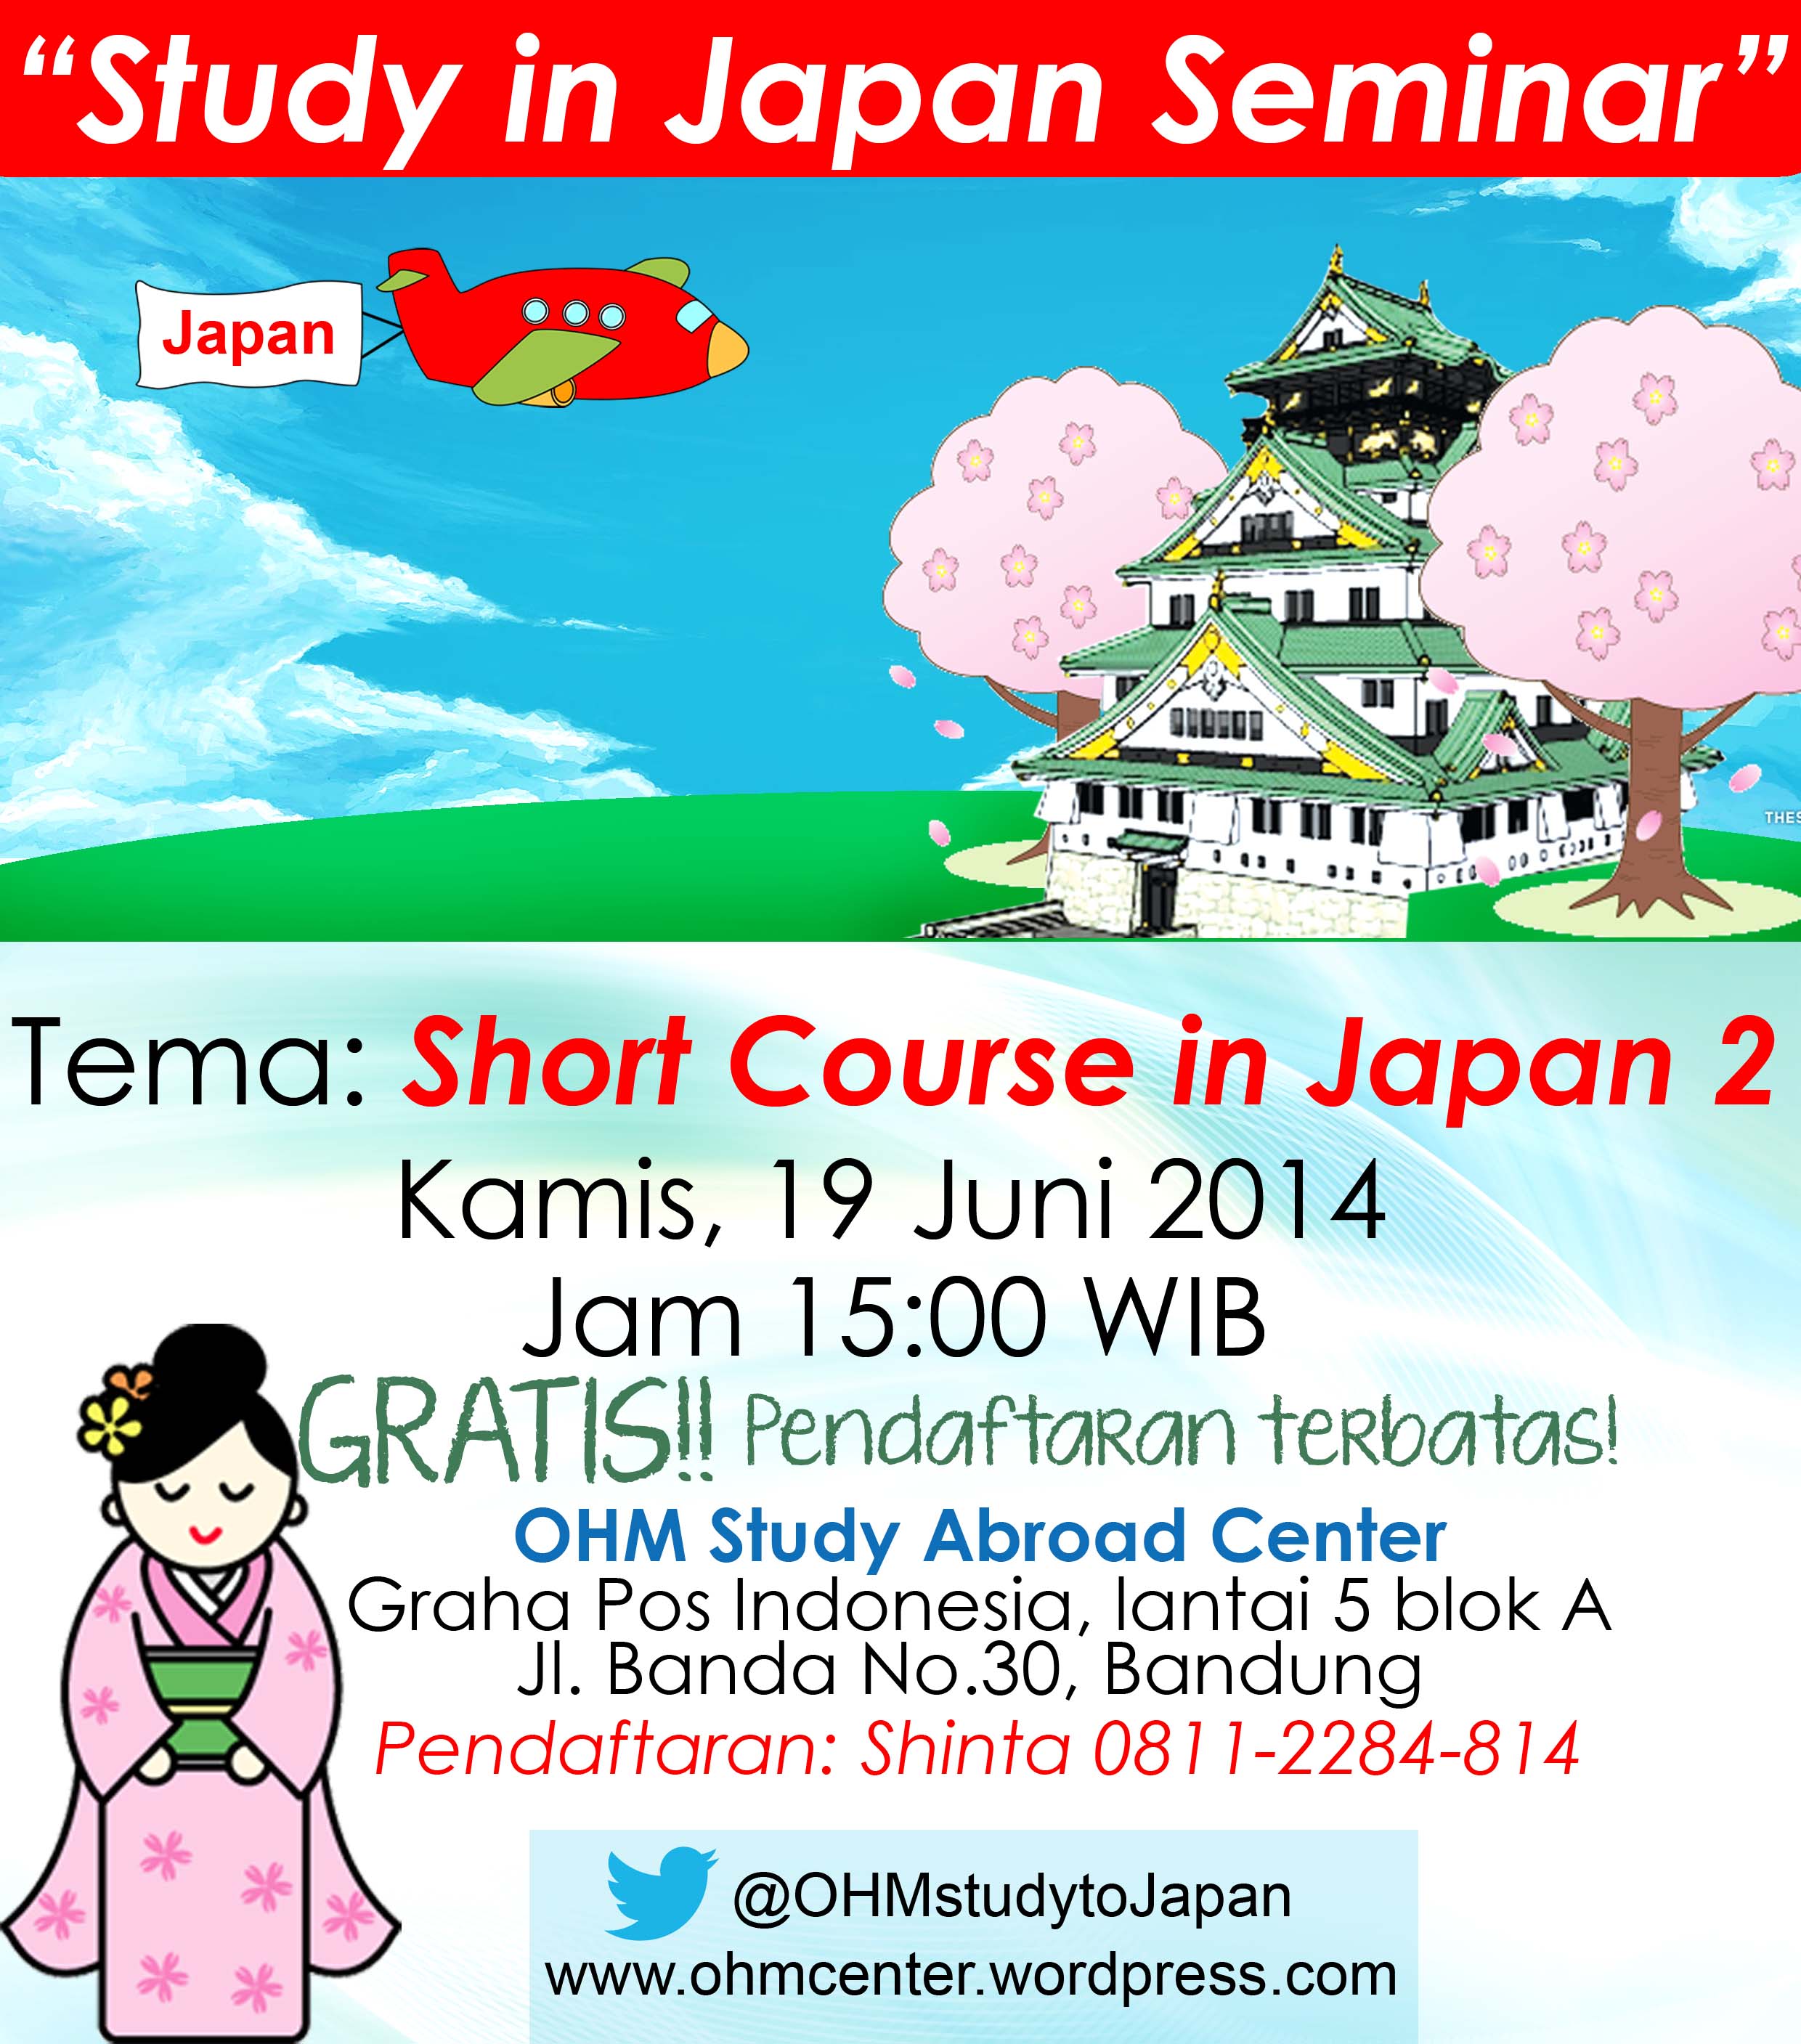 Study in Japan Seminar (Kamis, 19 Juni 2014)